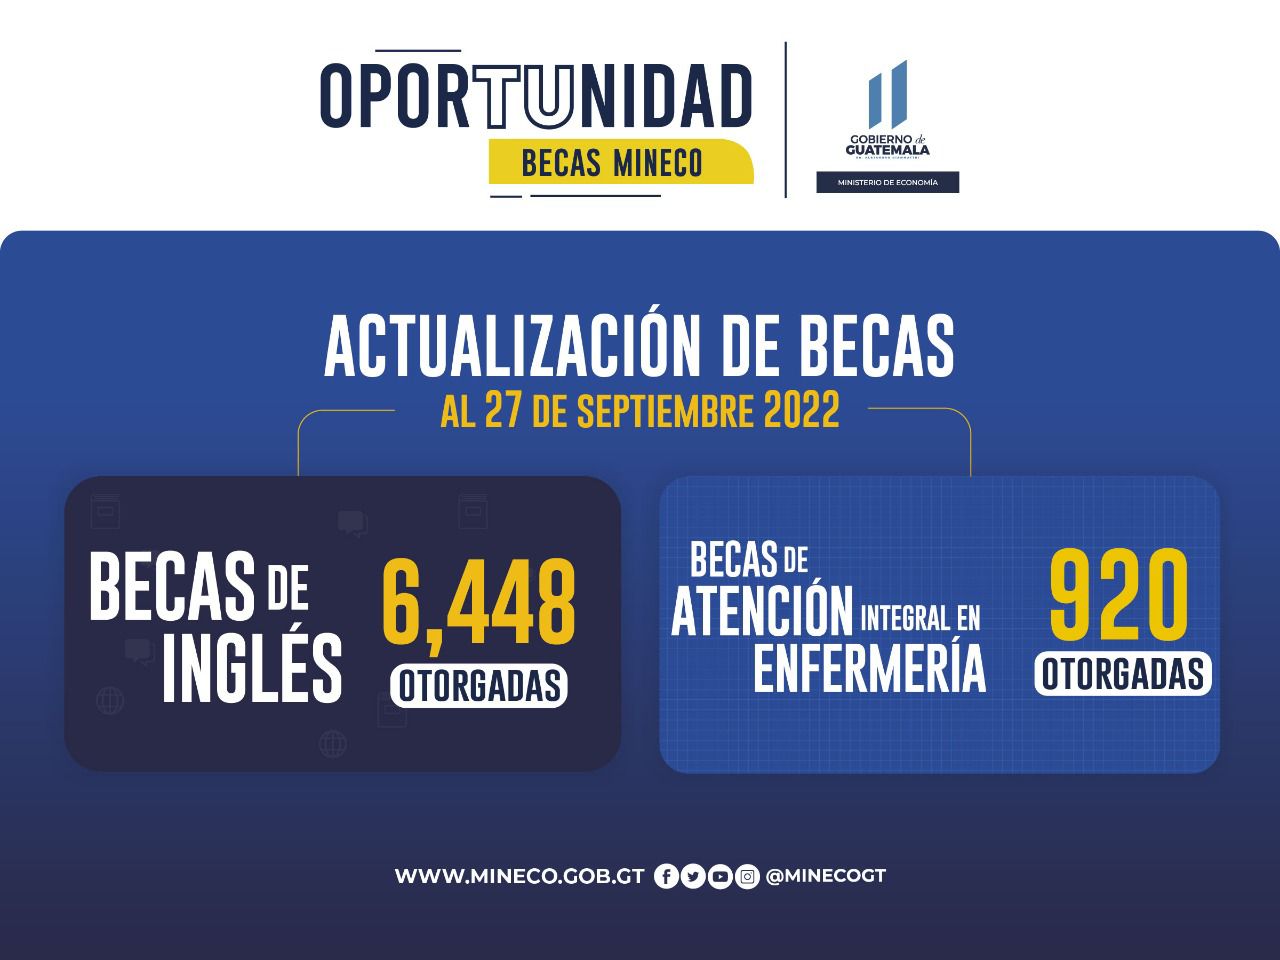 Total de becas otorgadas por Mineco hasta el 27 de septiembre .